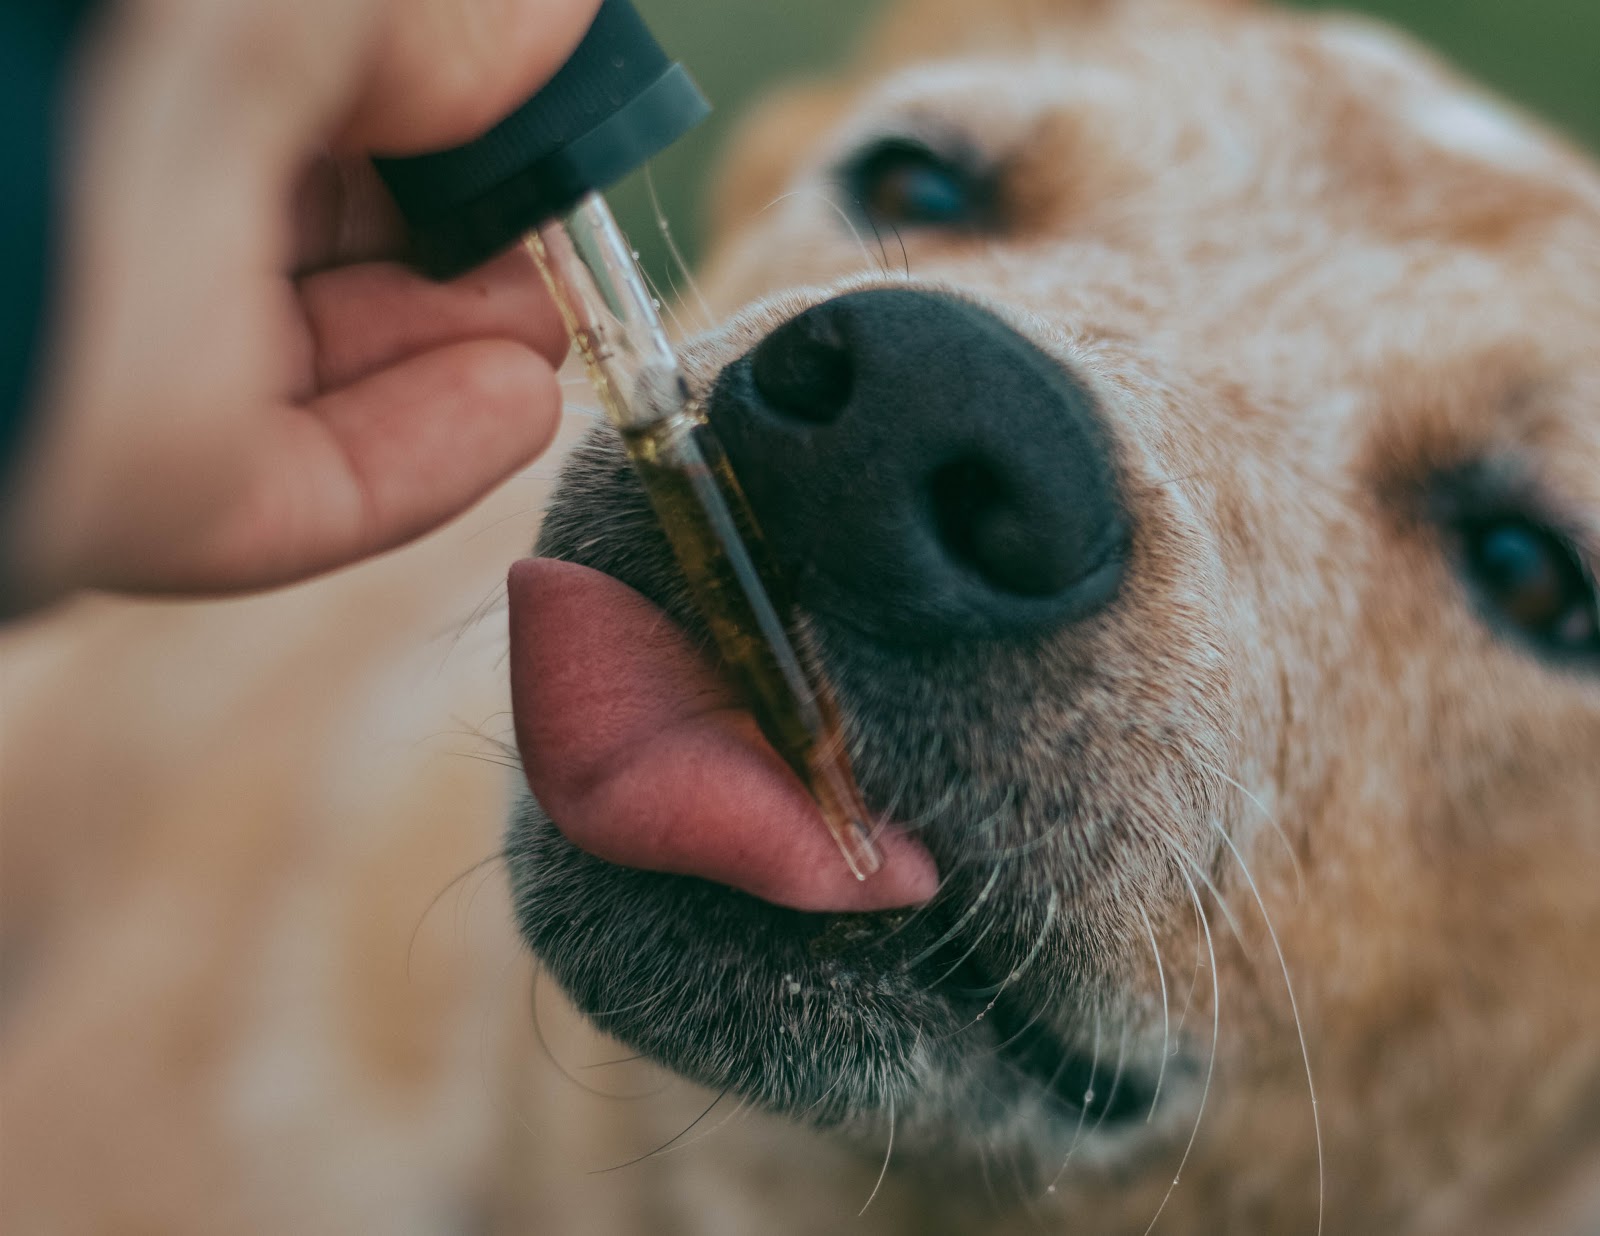 Buy CBD Hemp Oil For Dogs Online & In-Store